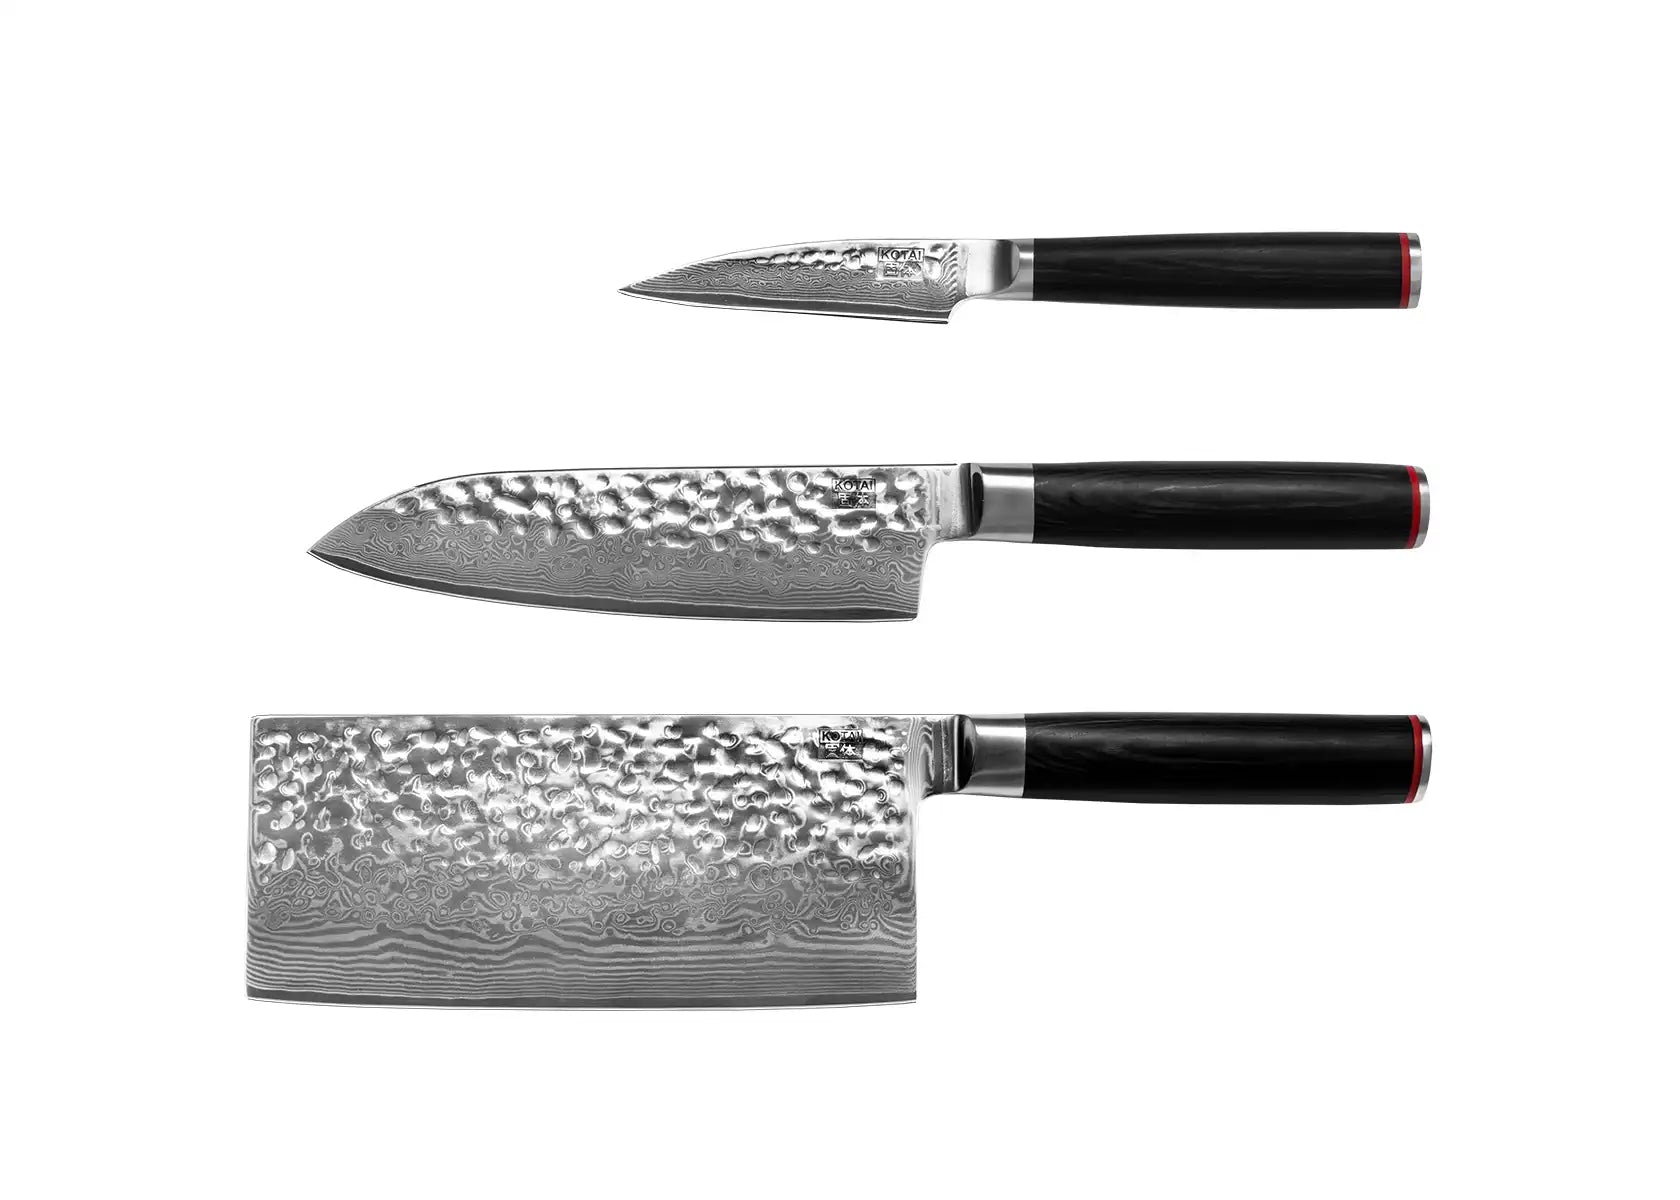 Asian 3-Piece Knife Set - Pakka Damascus Collection